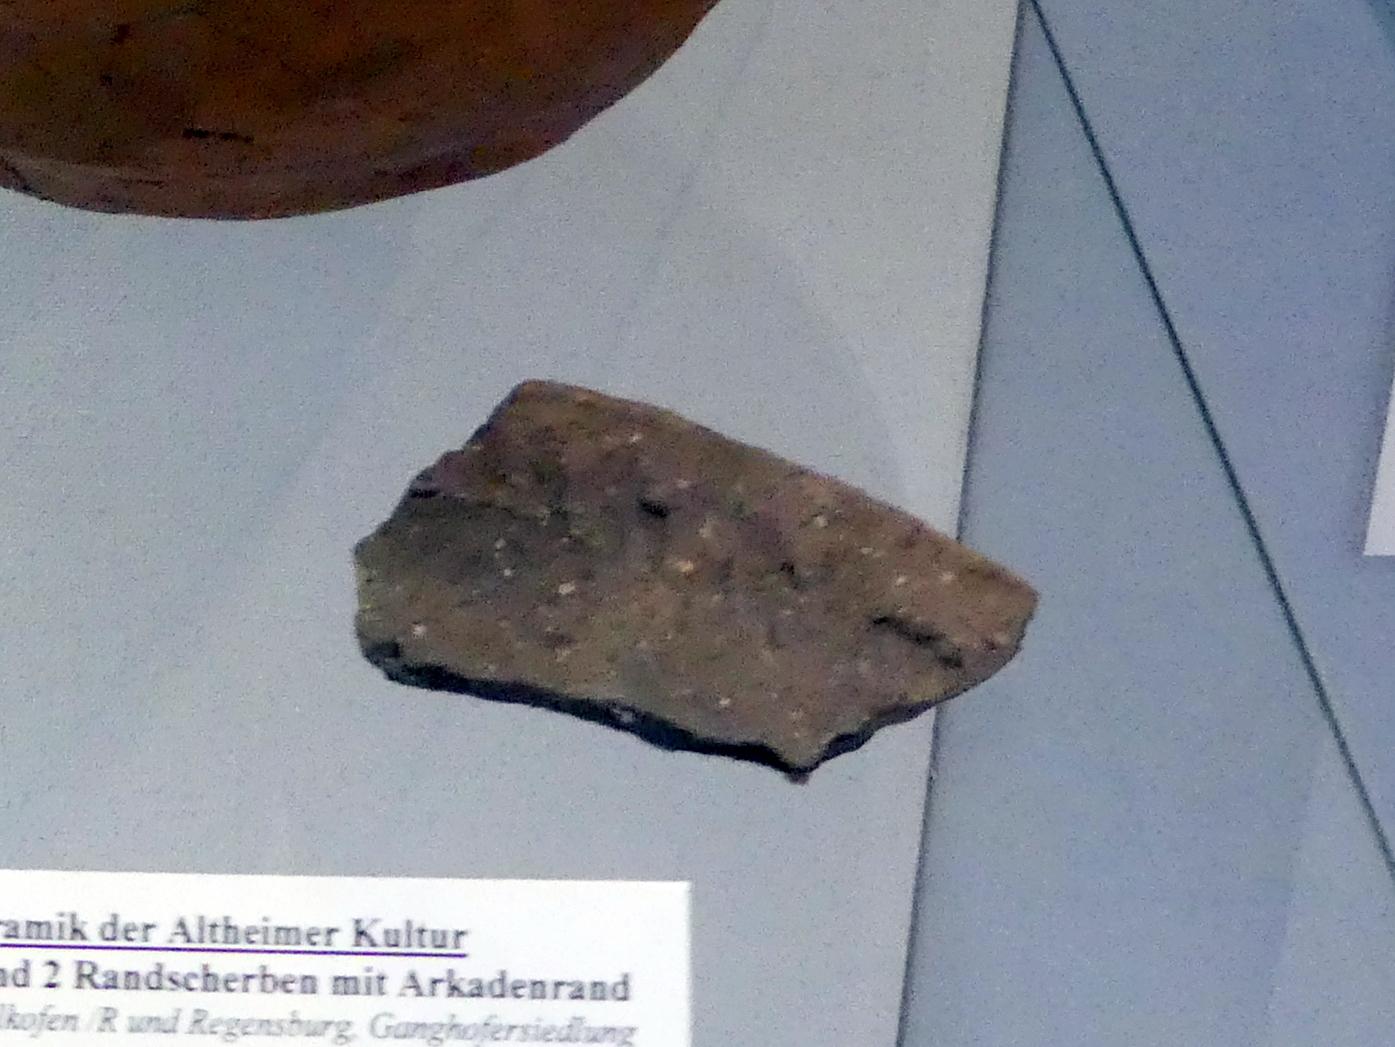 Randscherbe mit Arkadenrand, Jungneolithikum, 4400 - 3500 v. Chr., Bild 1/2